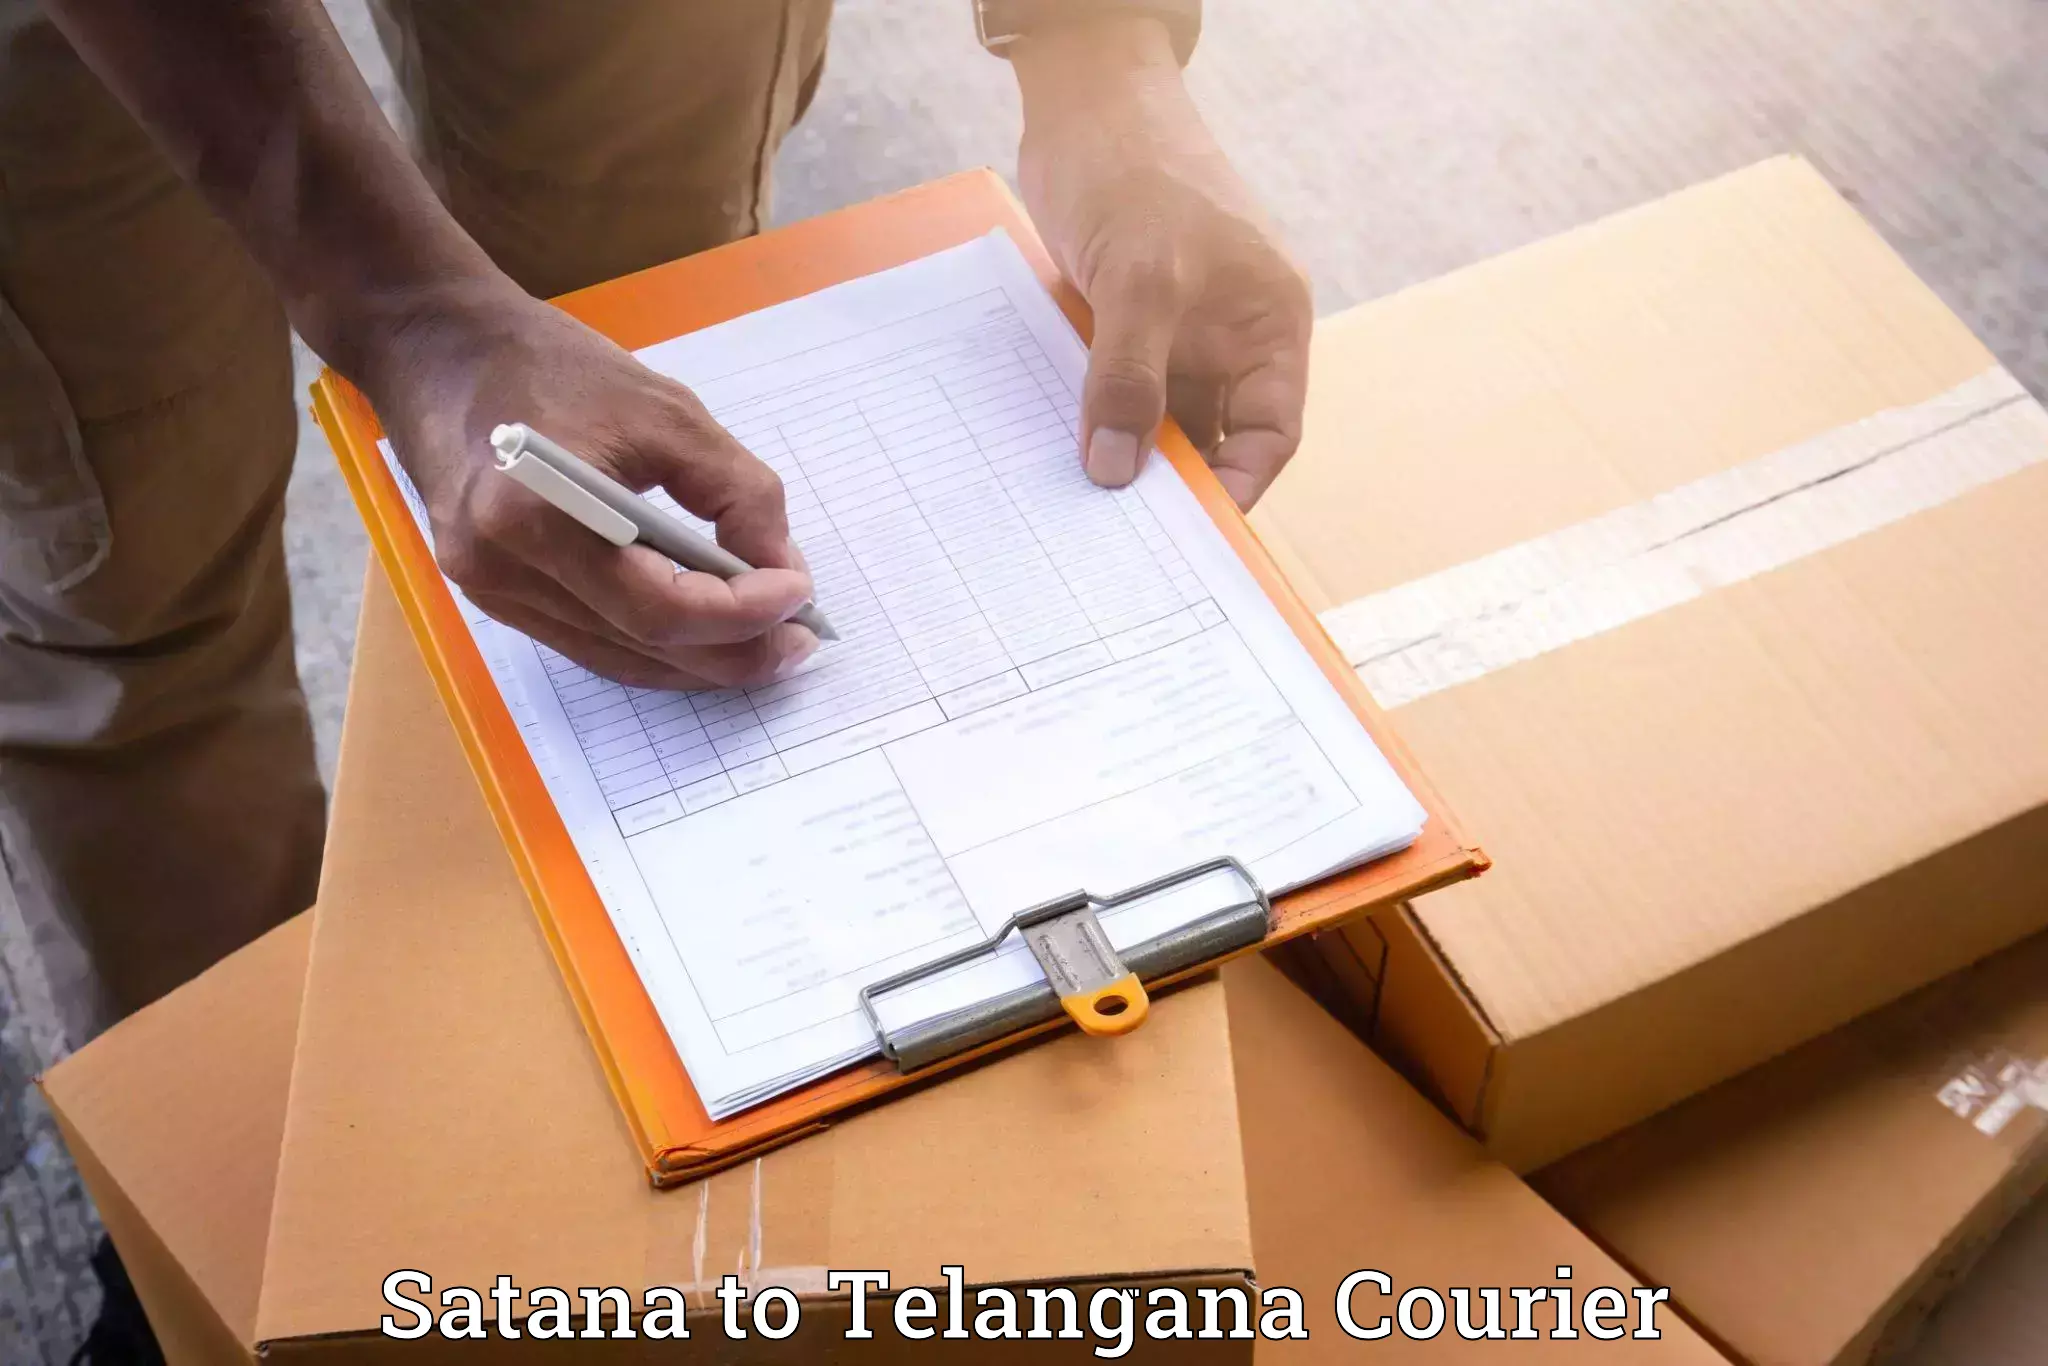 Furniture transport experts Satana to Telangana